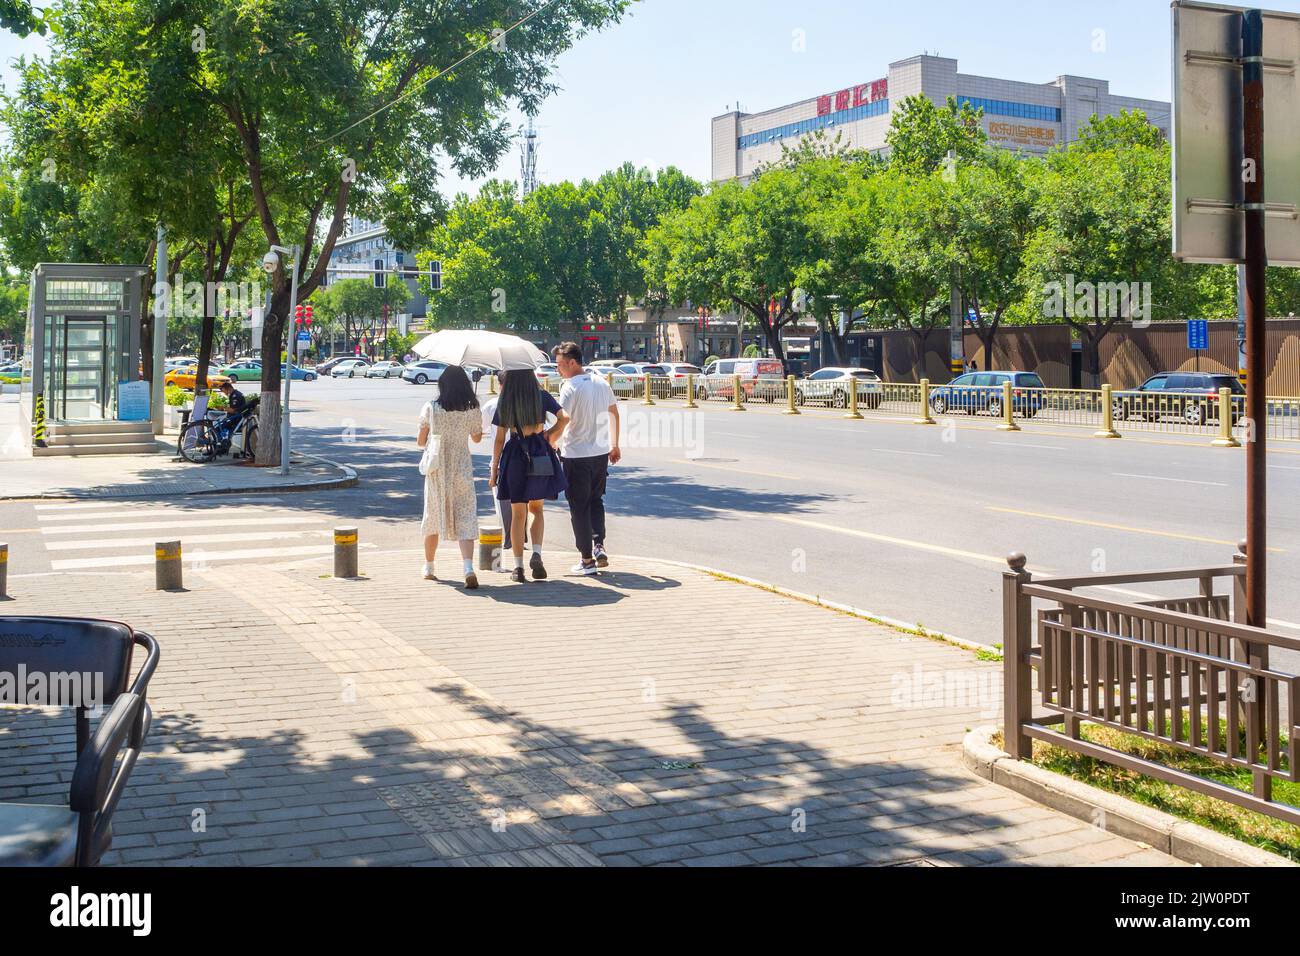 Les Chinois marchent sur un trottoir dans le quartier du centre-ville. L'un d'eux est doté d'un parapluie pour la protection contre les rayons UV. Banque D'Images